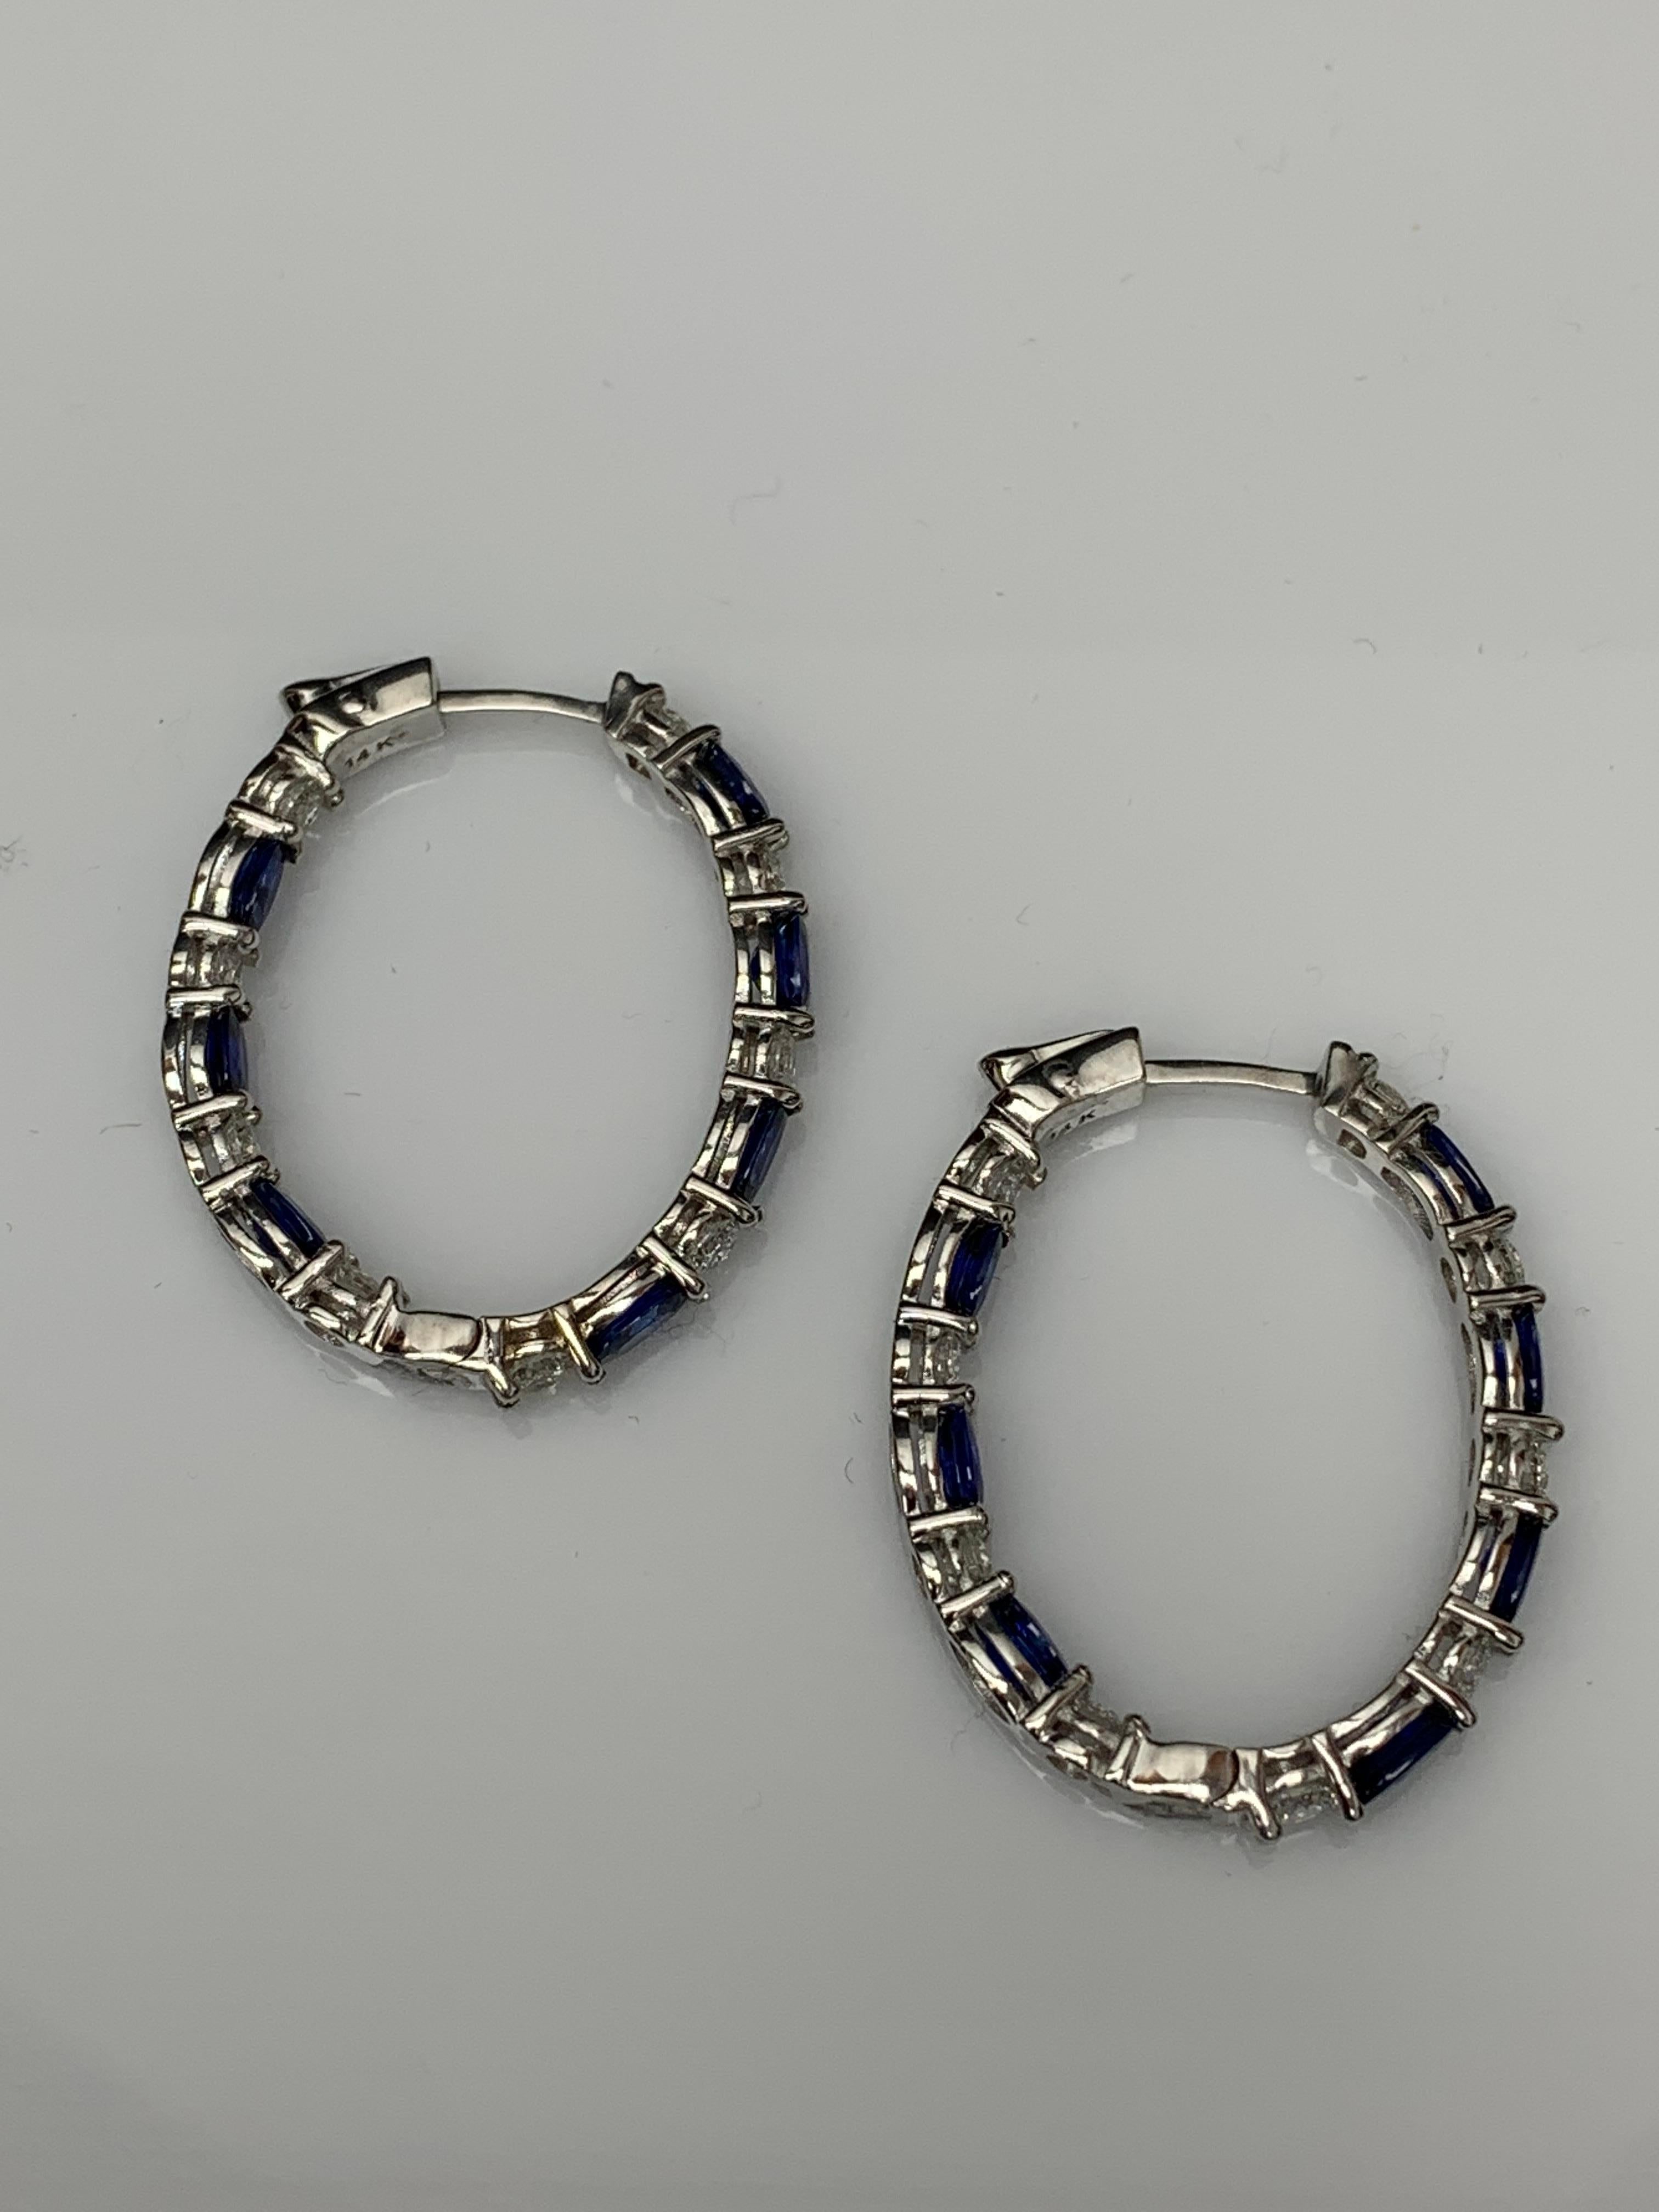 4.13 Carat Oval Cut Blue Sapphire Diamond Hoop Earrings in 14K White Gold For Sale 5